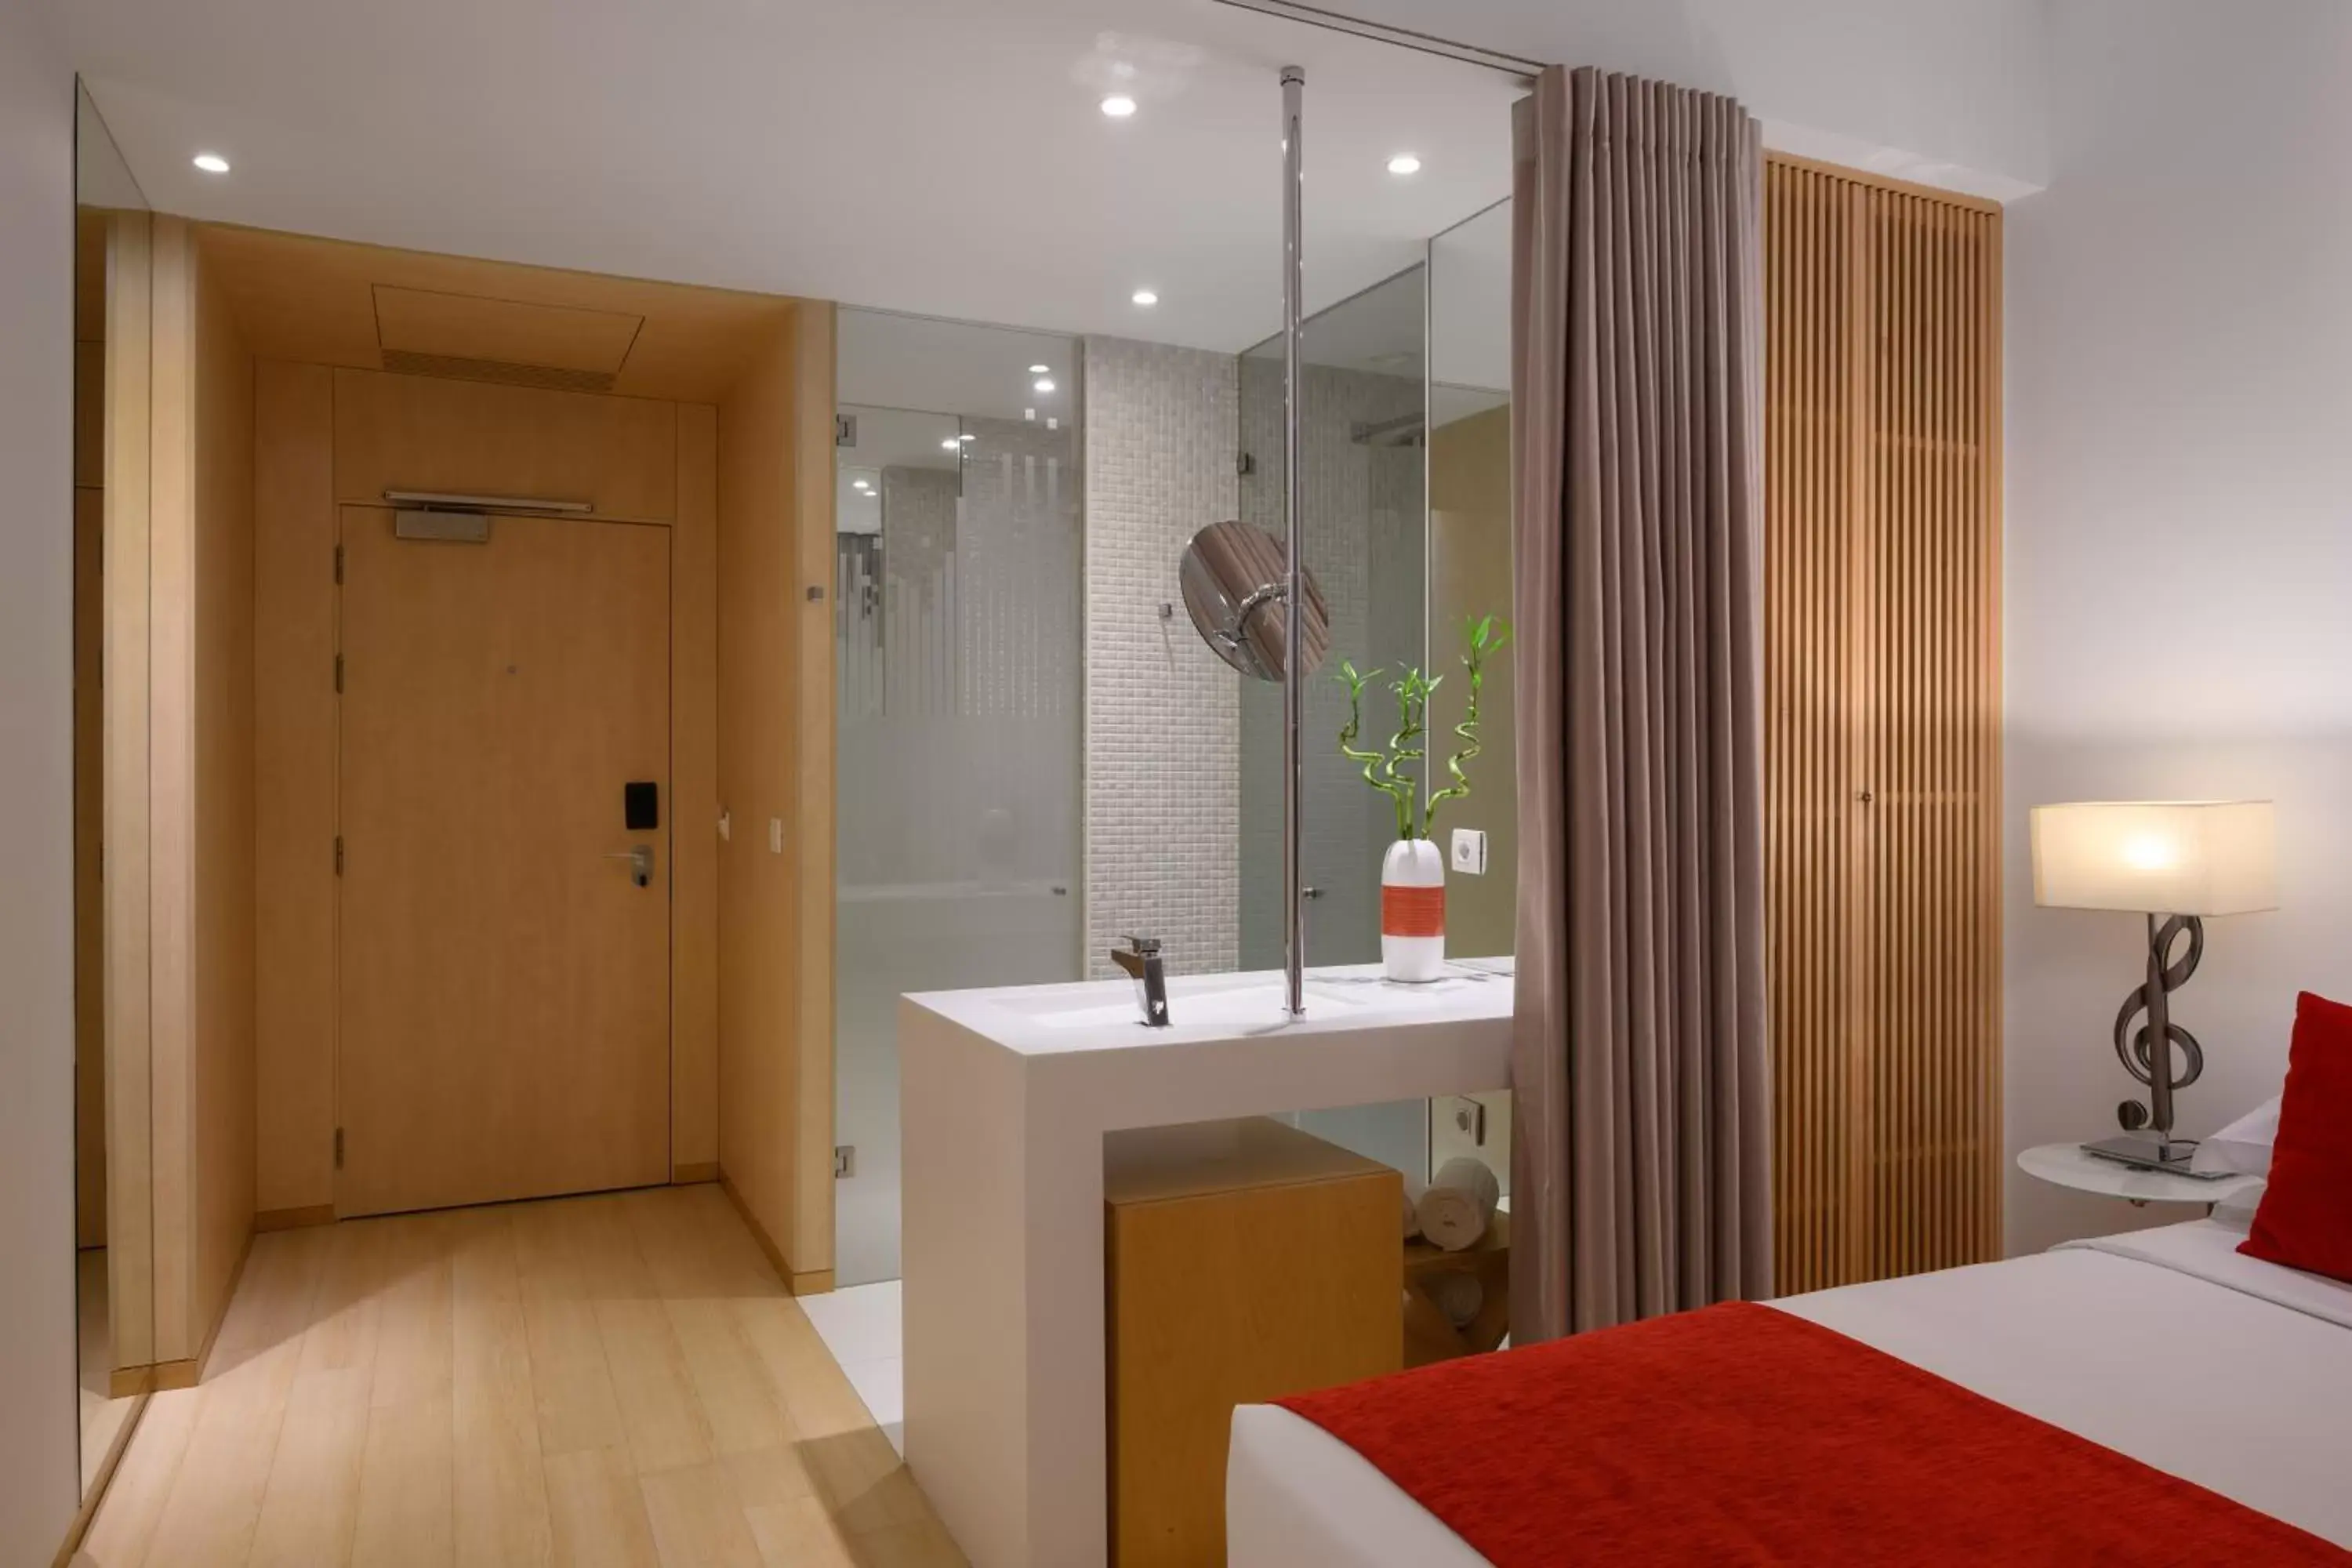 Bedroom, Bathroom in Hotel da Música